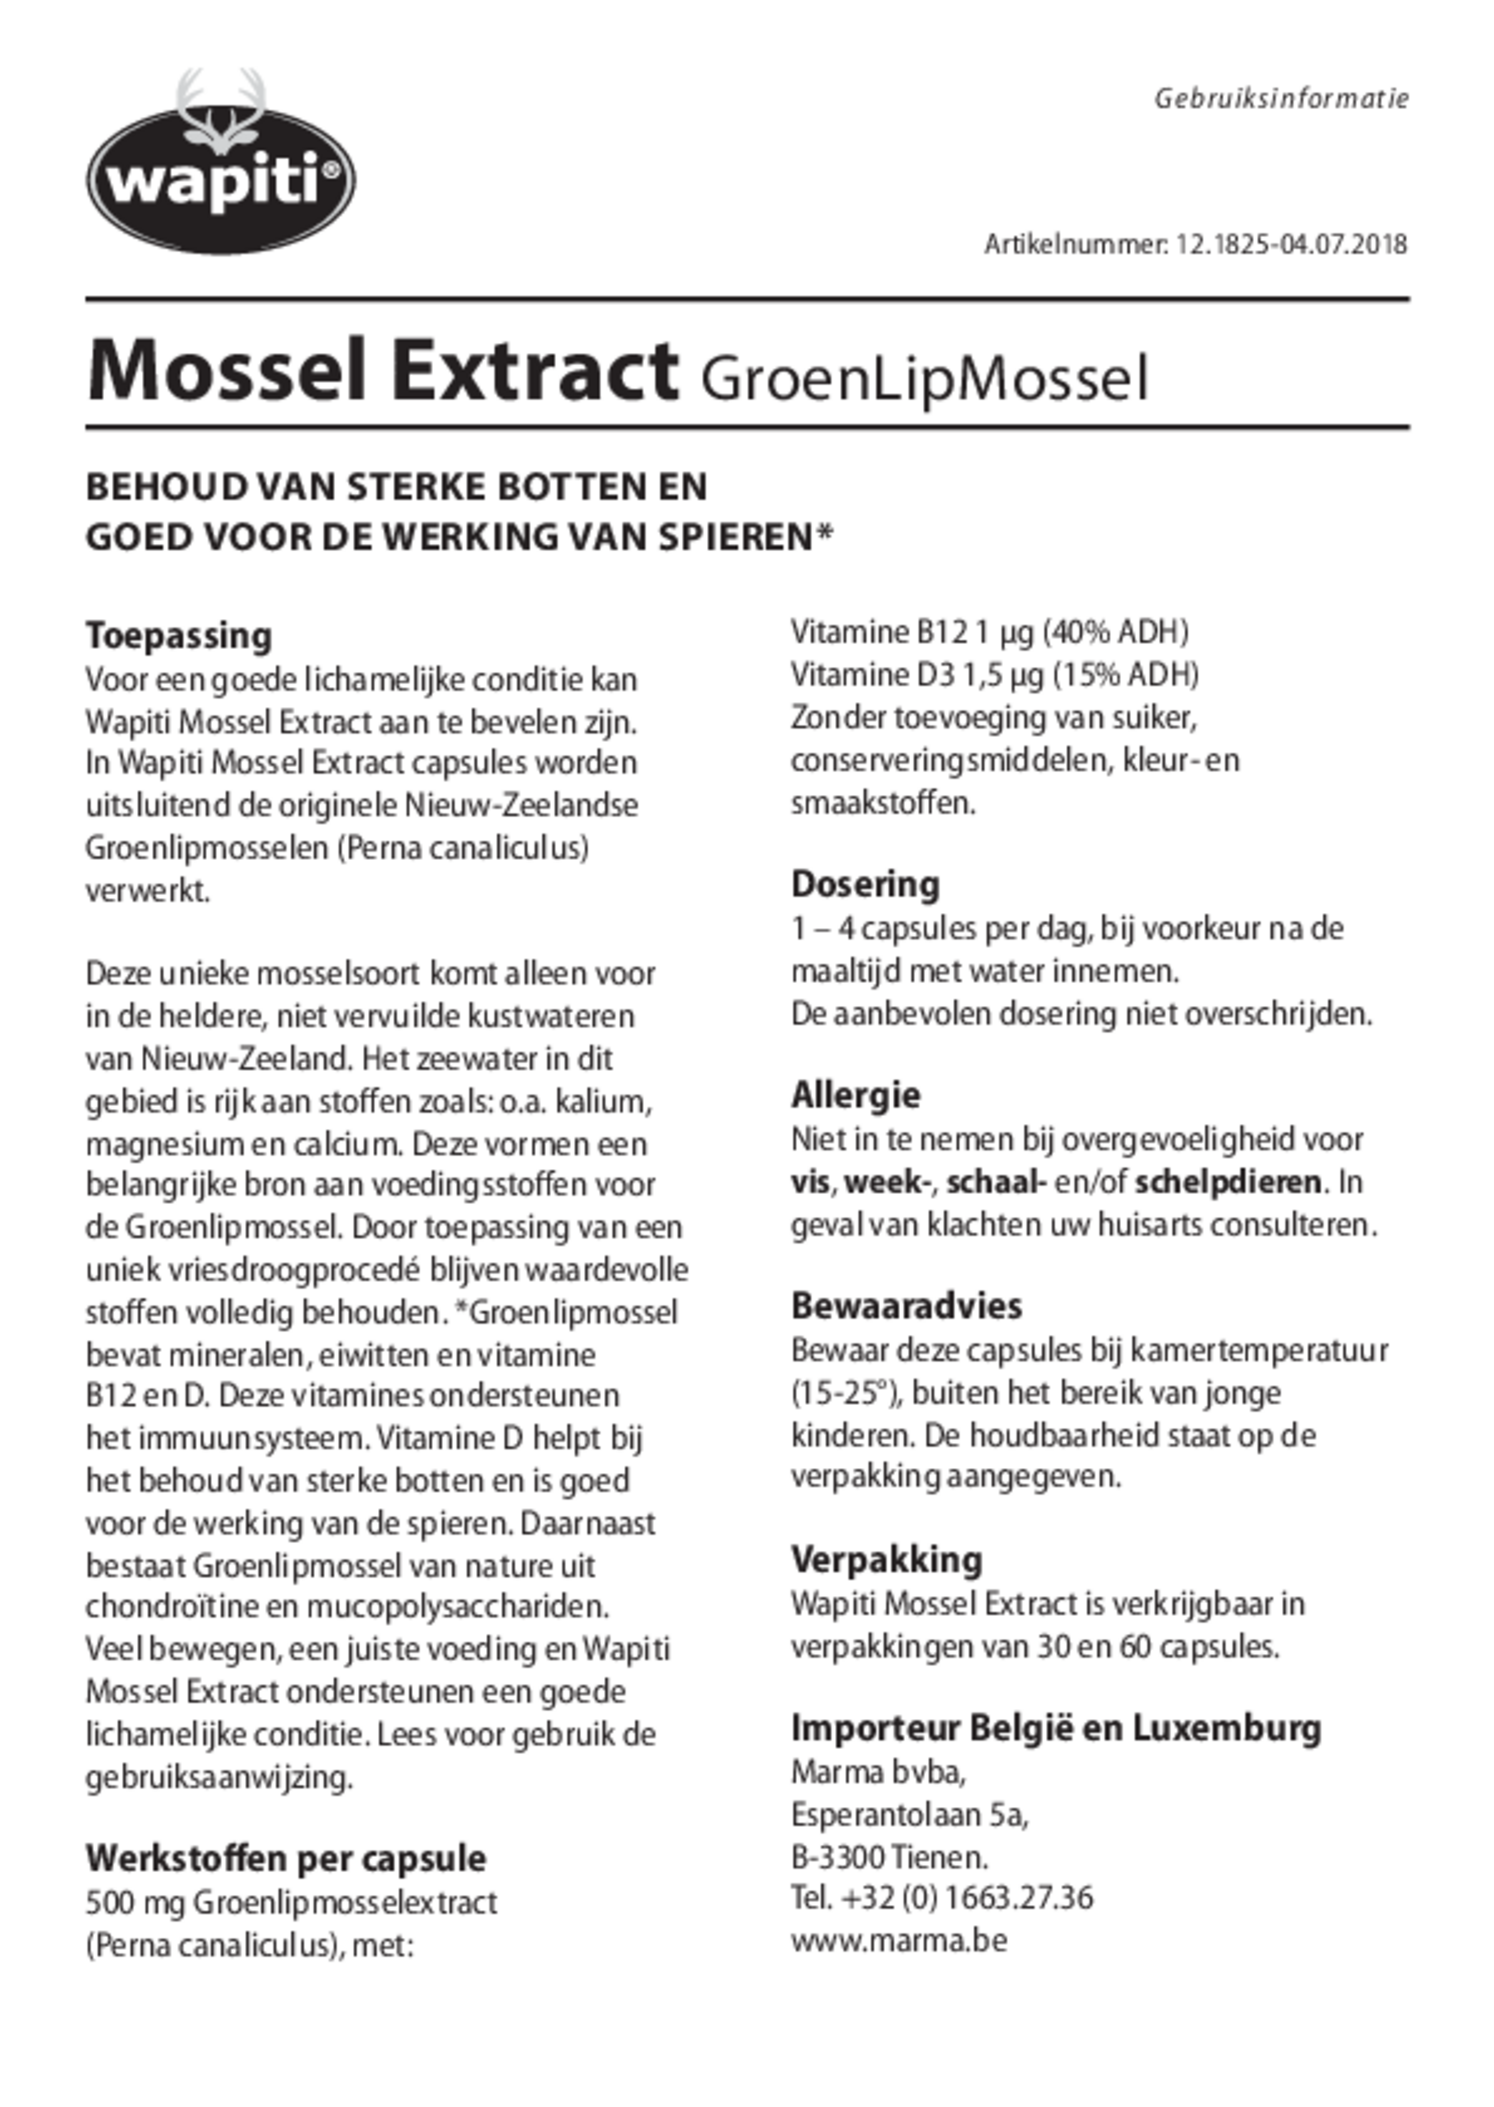 Mossel Extract Capsules afbeelding van document #1, gebruiksaanwijzing